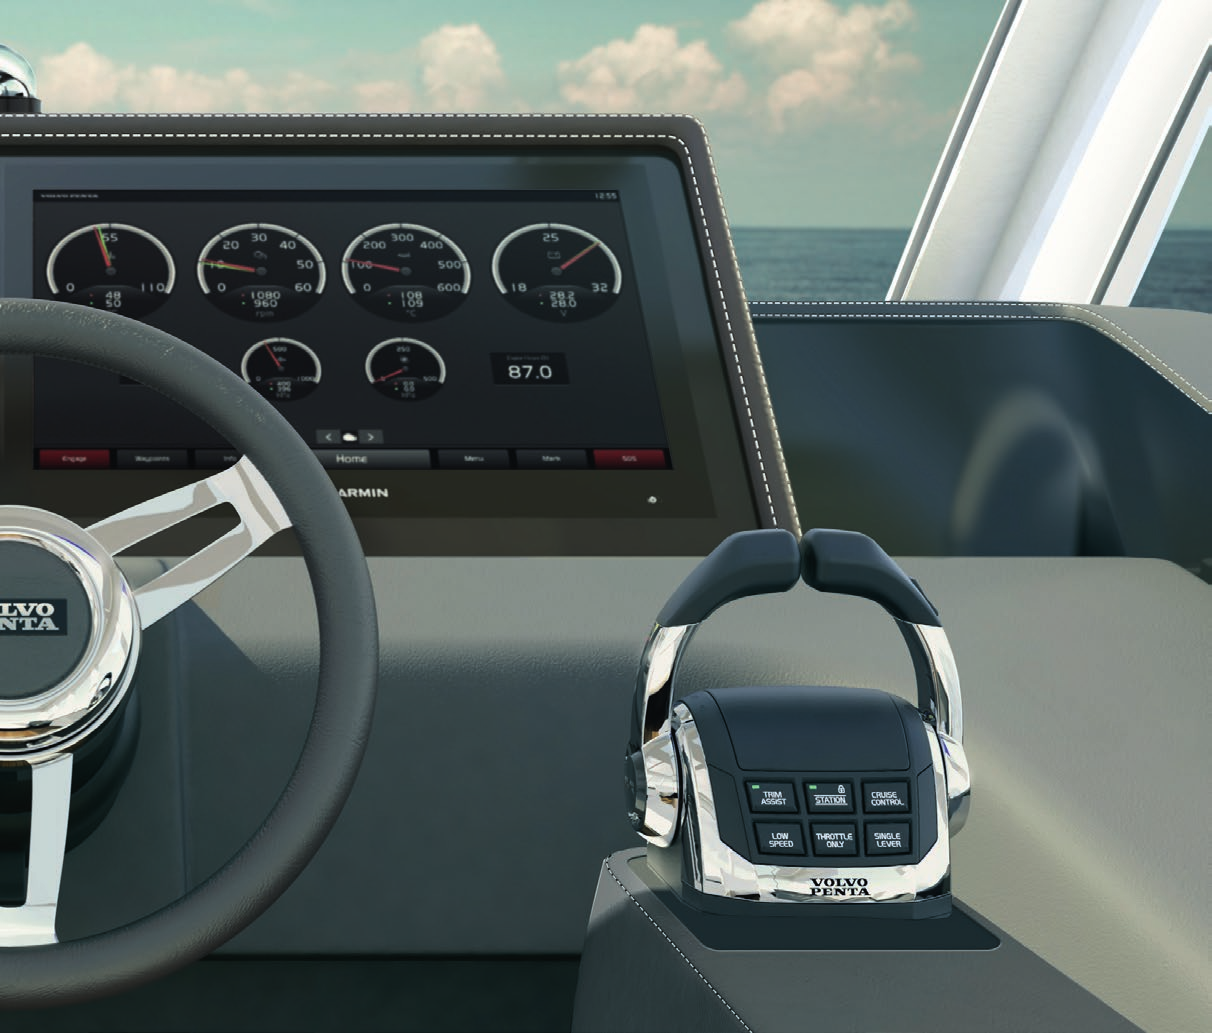 4 5 1. Framdrivning och navigering i ett Glass Cockpit System ger dig en heltäckande överblick över både framdrivning och navigering genom att visa alla data på snabba bredbildsskärmar.